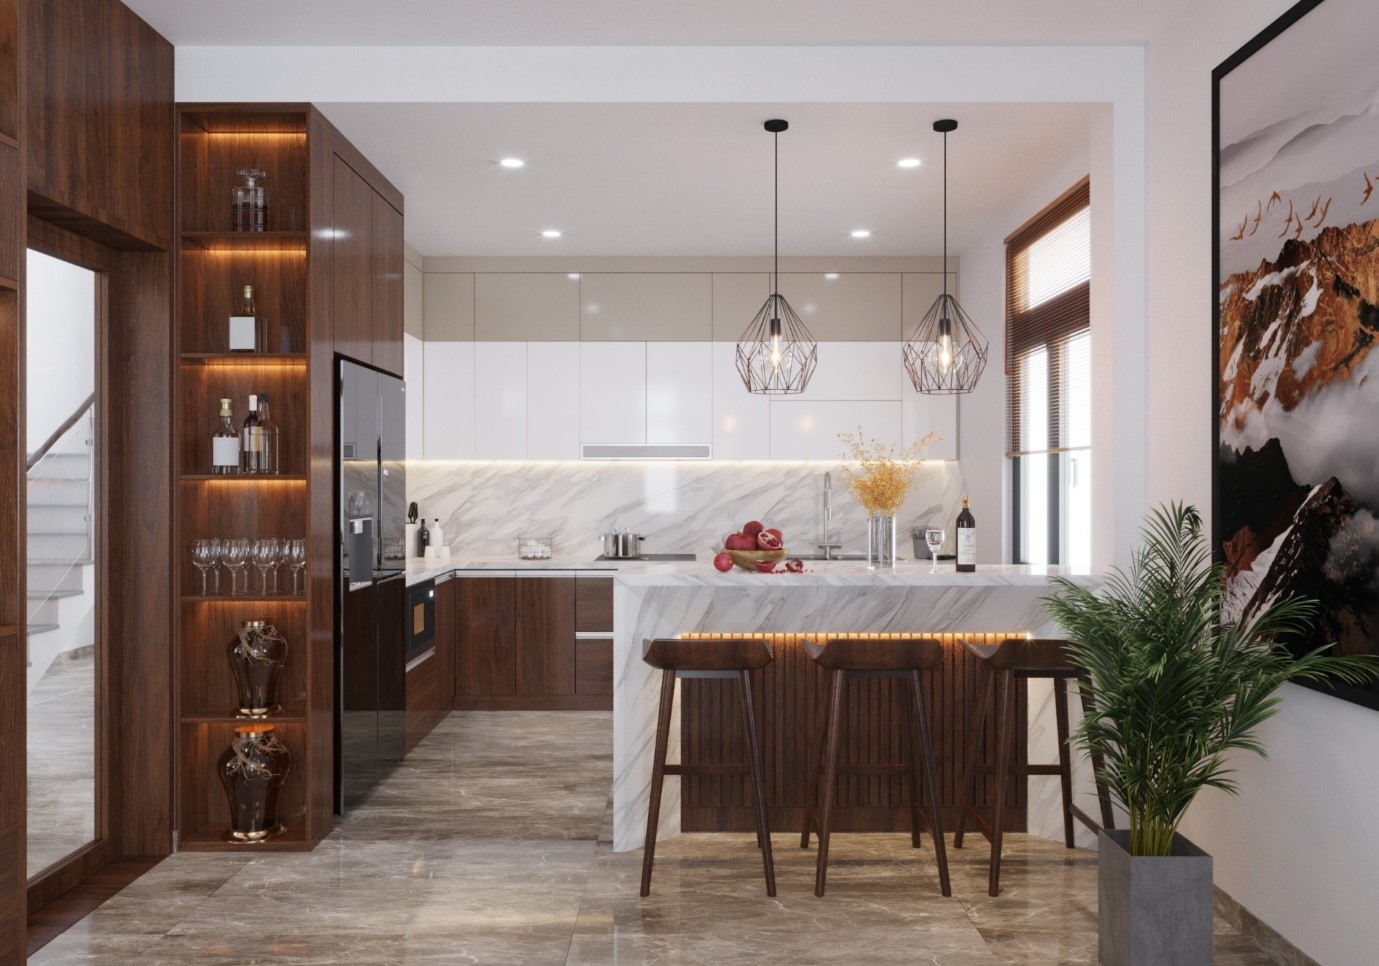 Tủ bếp nhà chung cư được thiết kế từ chính đội ngũ chuyên nghiệp của Vifuta Home 